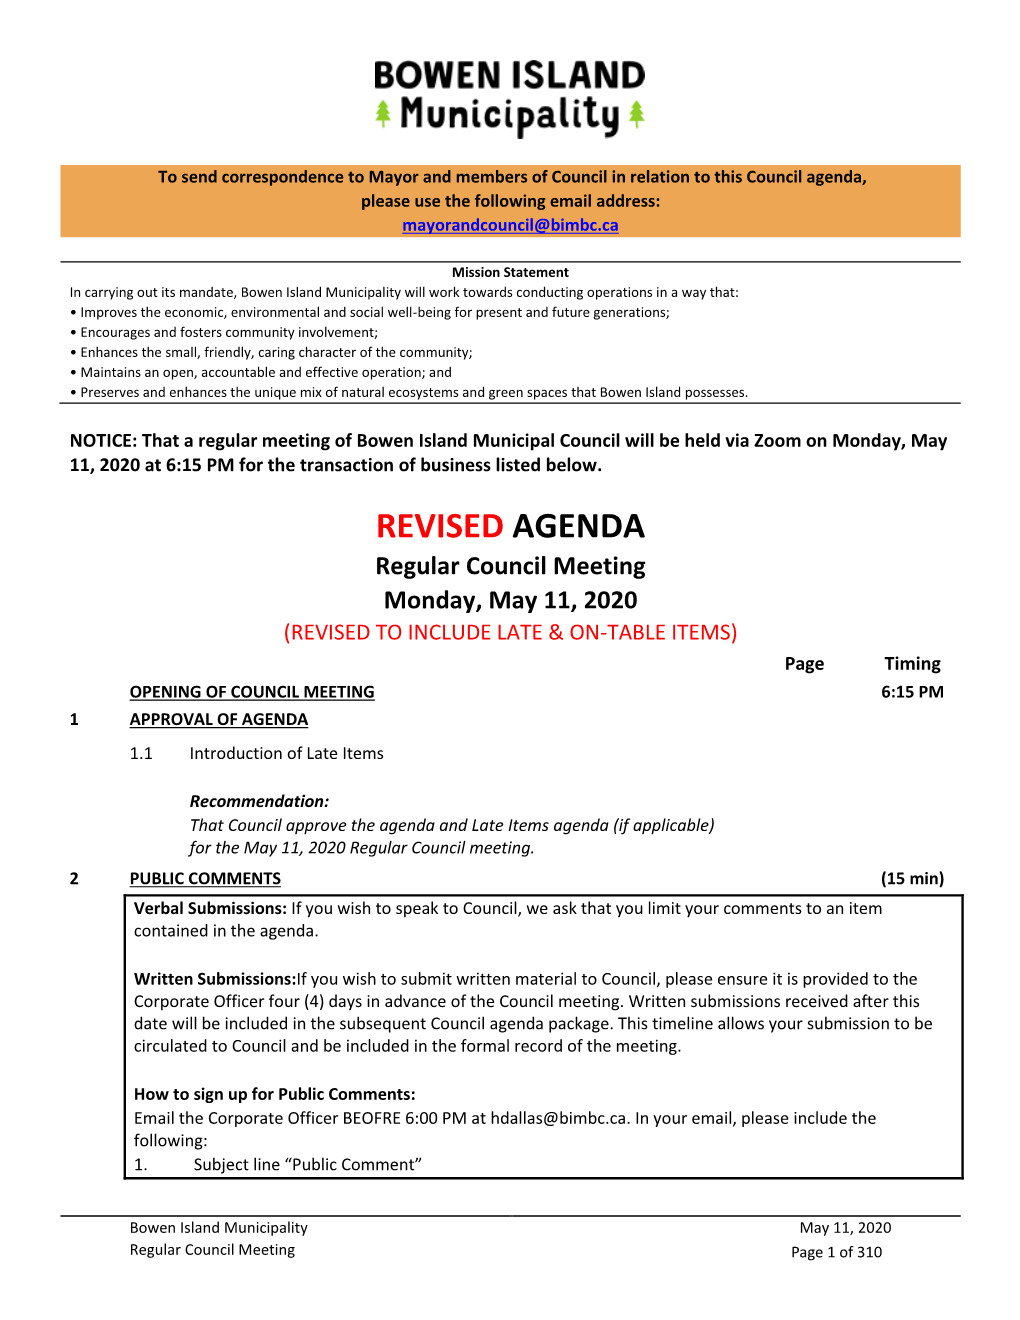 Regular Council Meeting Monday, May 11, 2020